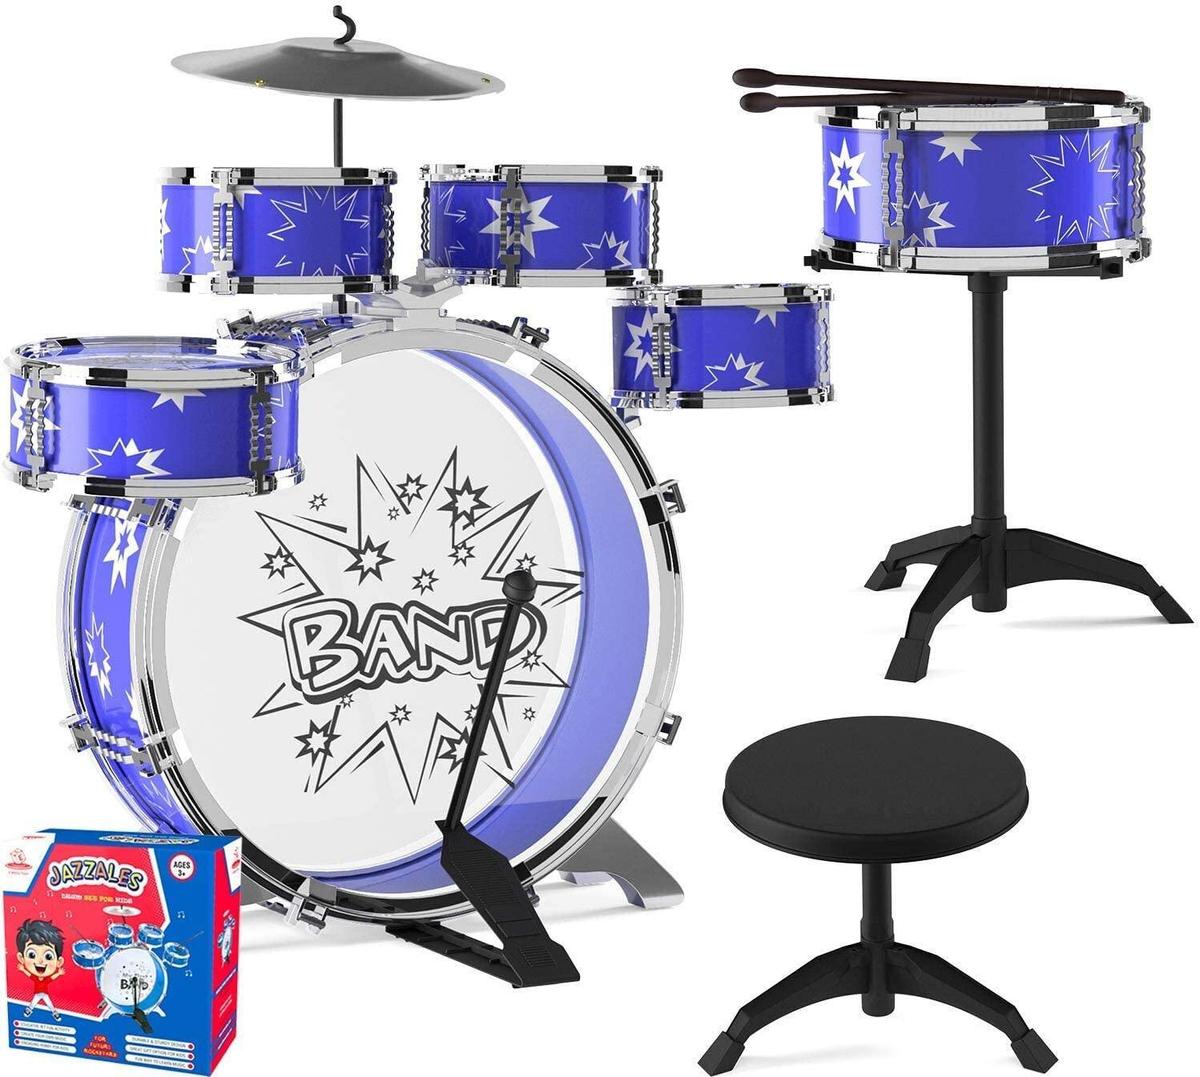 EMAAS Kids Jazz Drum Set For Kids?5 Drums, 2 Drumsticks, Kick Pedal, Cymbal Chair - $39.99 MSRP